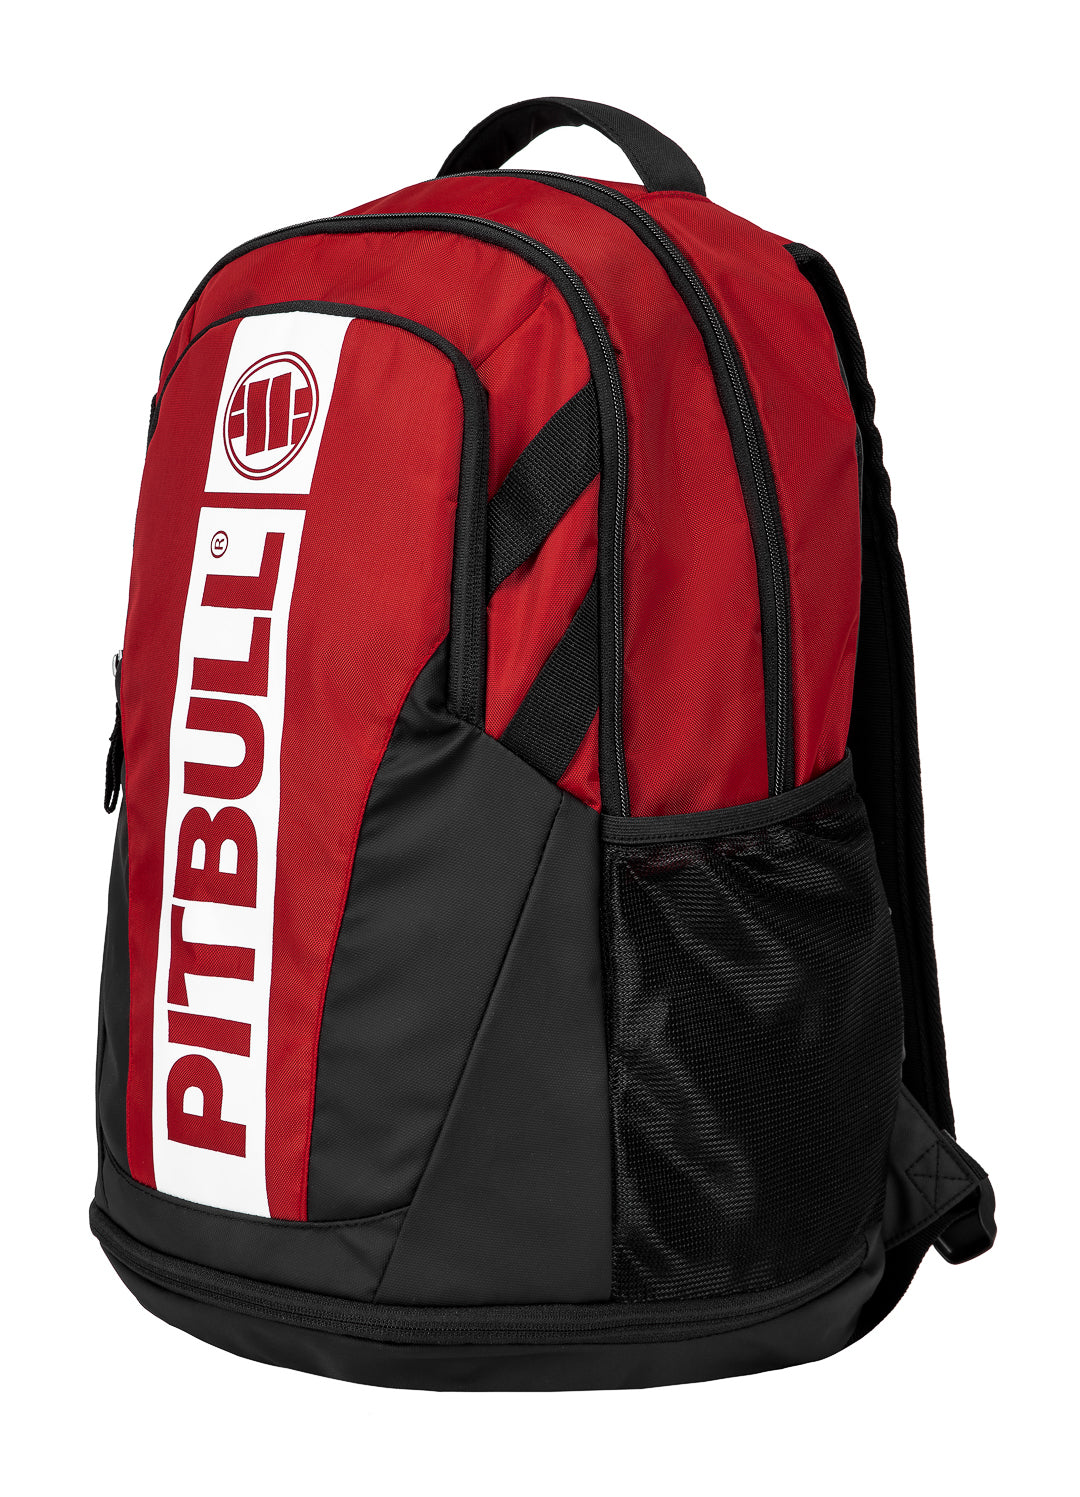 HILLTOP Red/Black Backpack